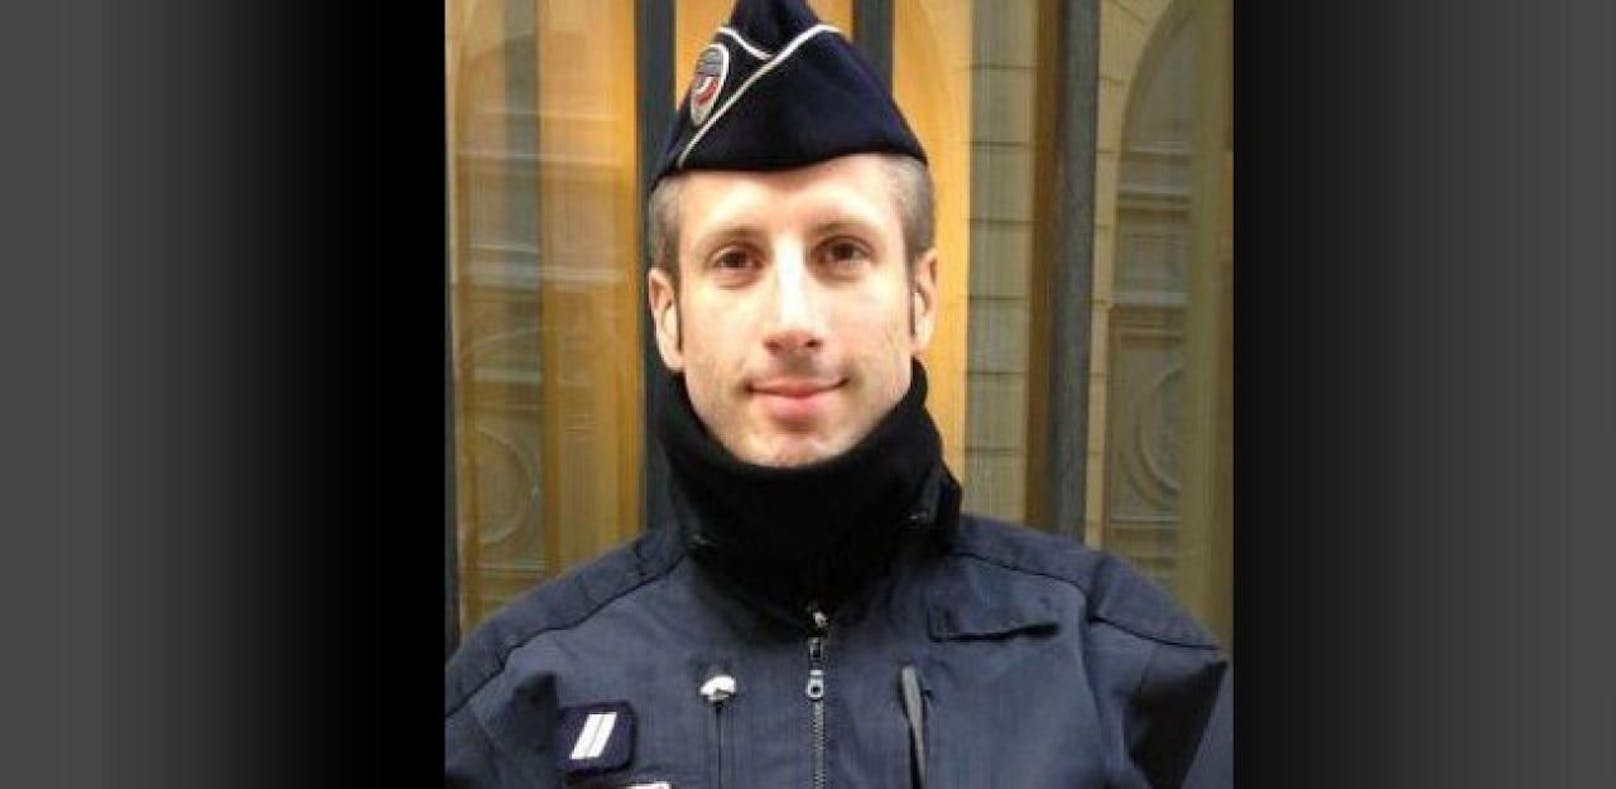 Polizist überlebte Terror, nun bei Anschlag getötet